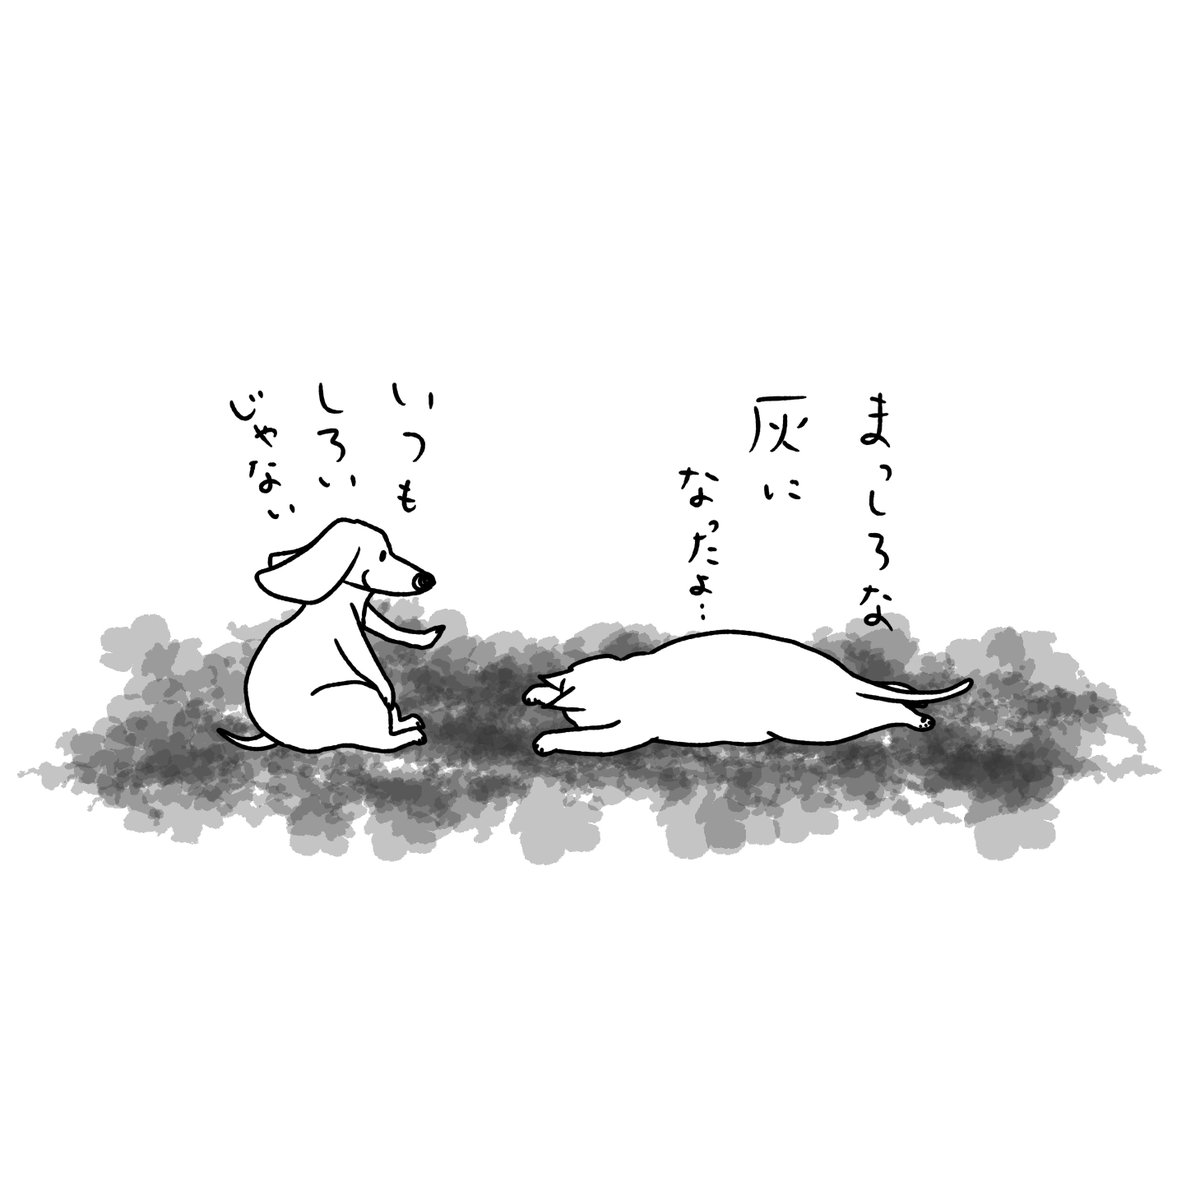 石川ともこ 疲れた一週間でした 晴れてますね よい連休を Illustration イラスト 猫 ねこ しろさん 犬 わんこ ペット 動物 3連休 天気 晴れ 春